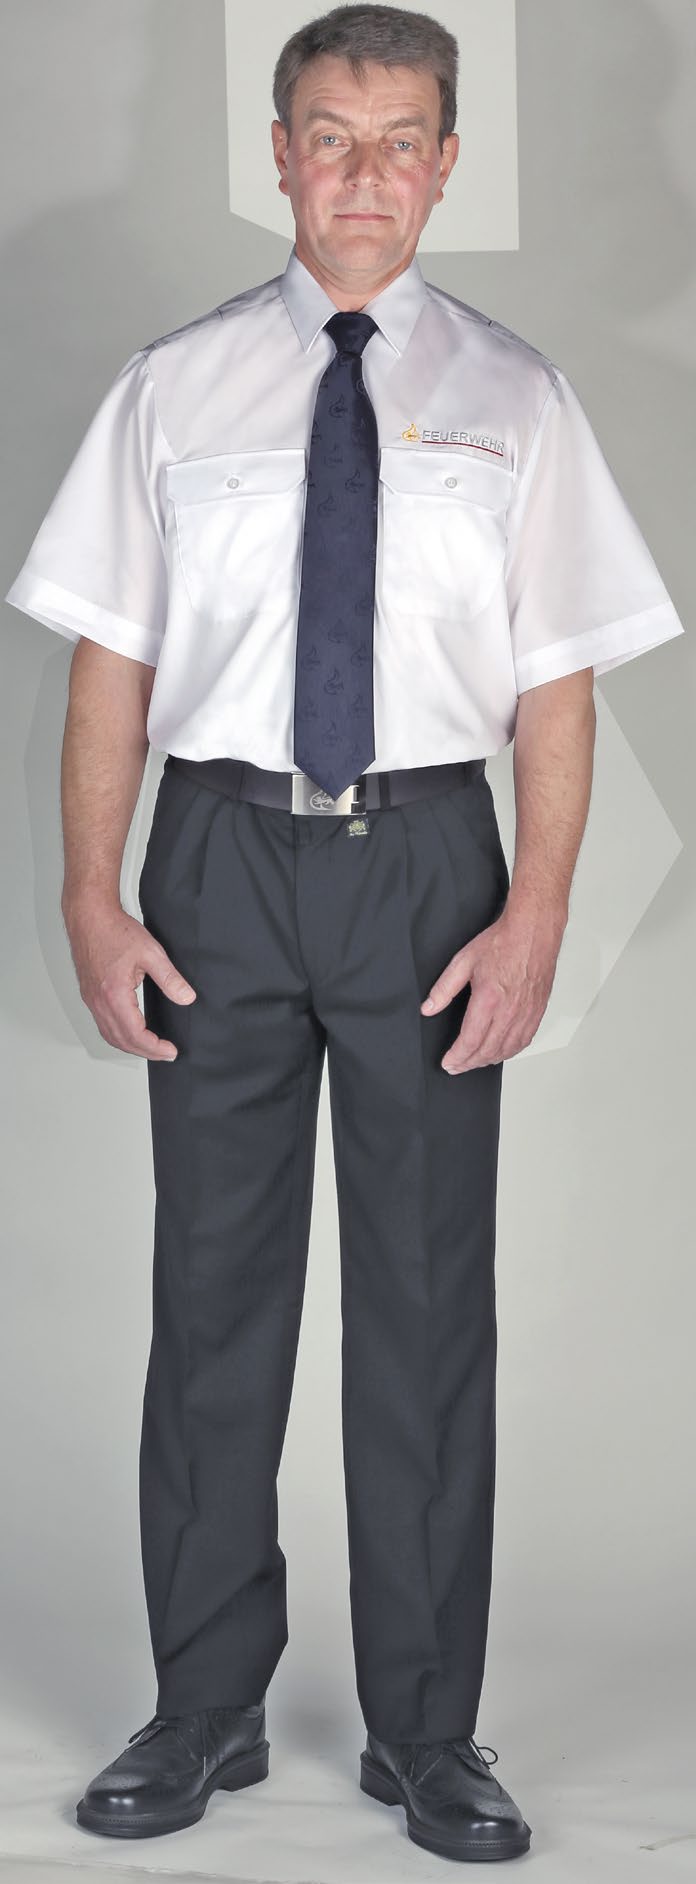 Diensthemd kurzarm 8918311 Diensthemd Kurzarm weiß Material: 100 % Baumwolle Farbe Weiß 1/2 Arm, mit Lidokragen zwei Brusttaschen mit Patte und links